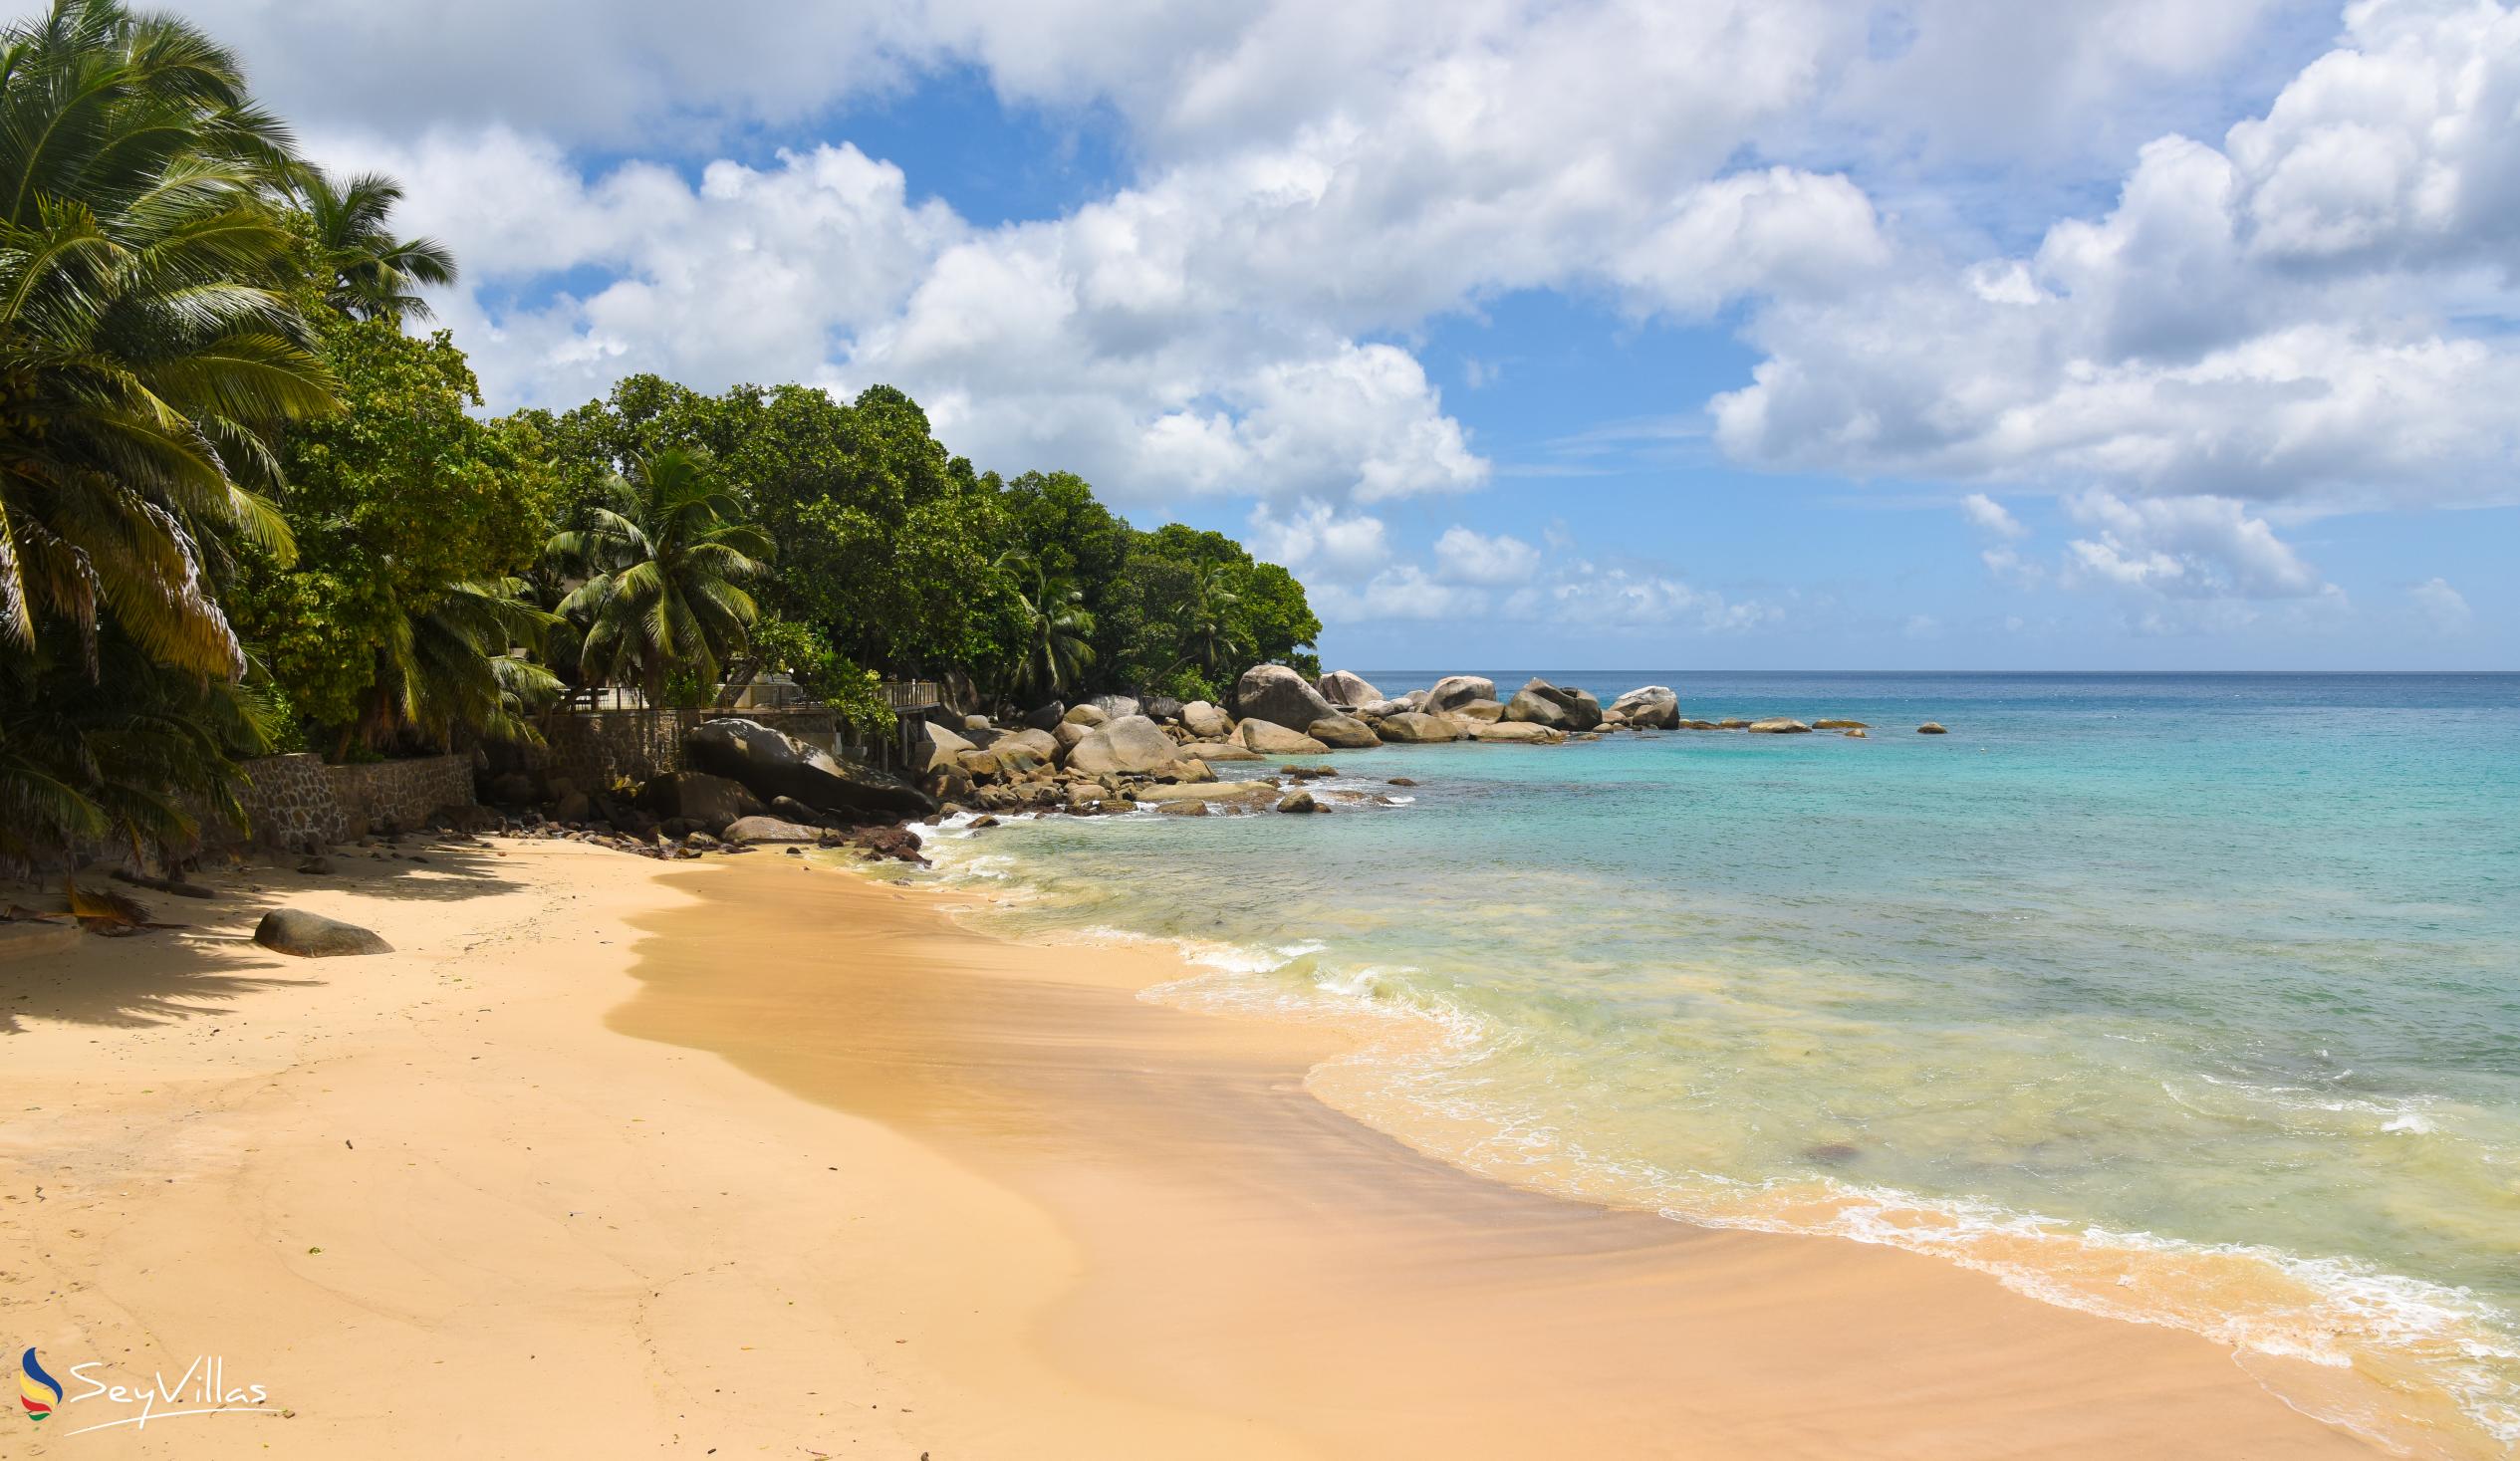 Foto 11: Glacis Beach - Mahé (Seychelles)